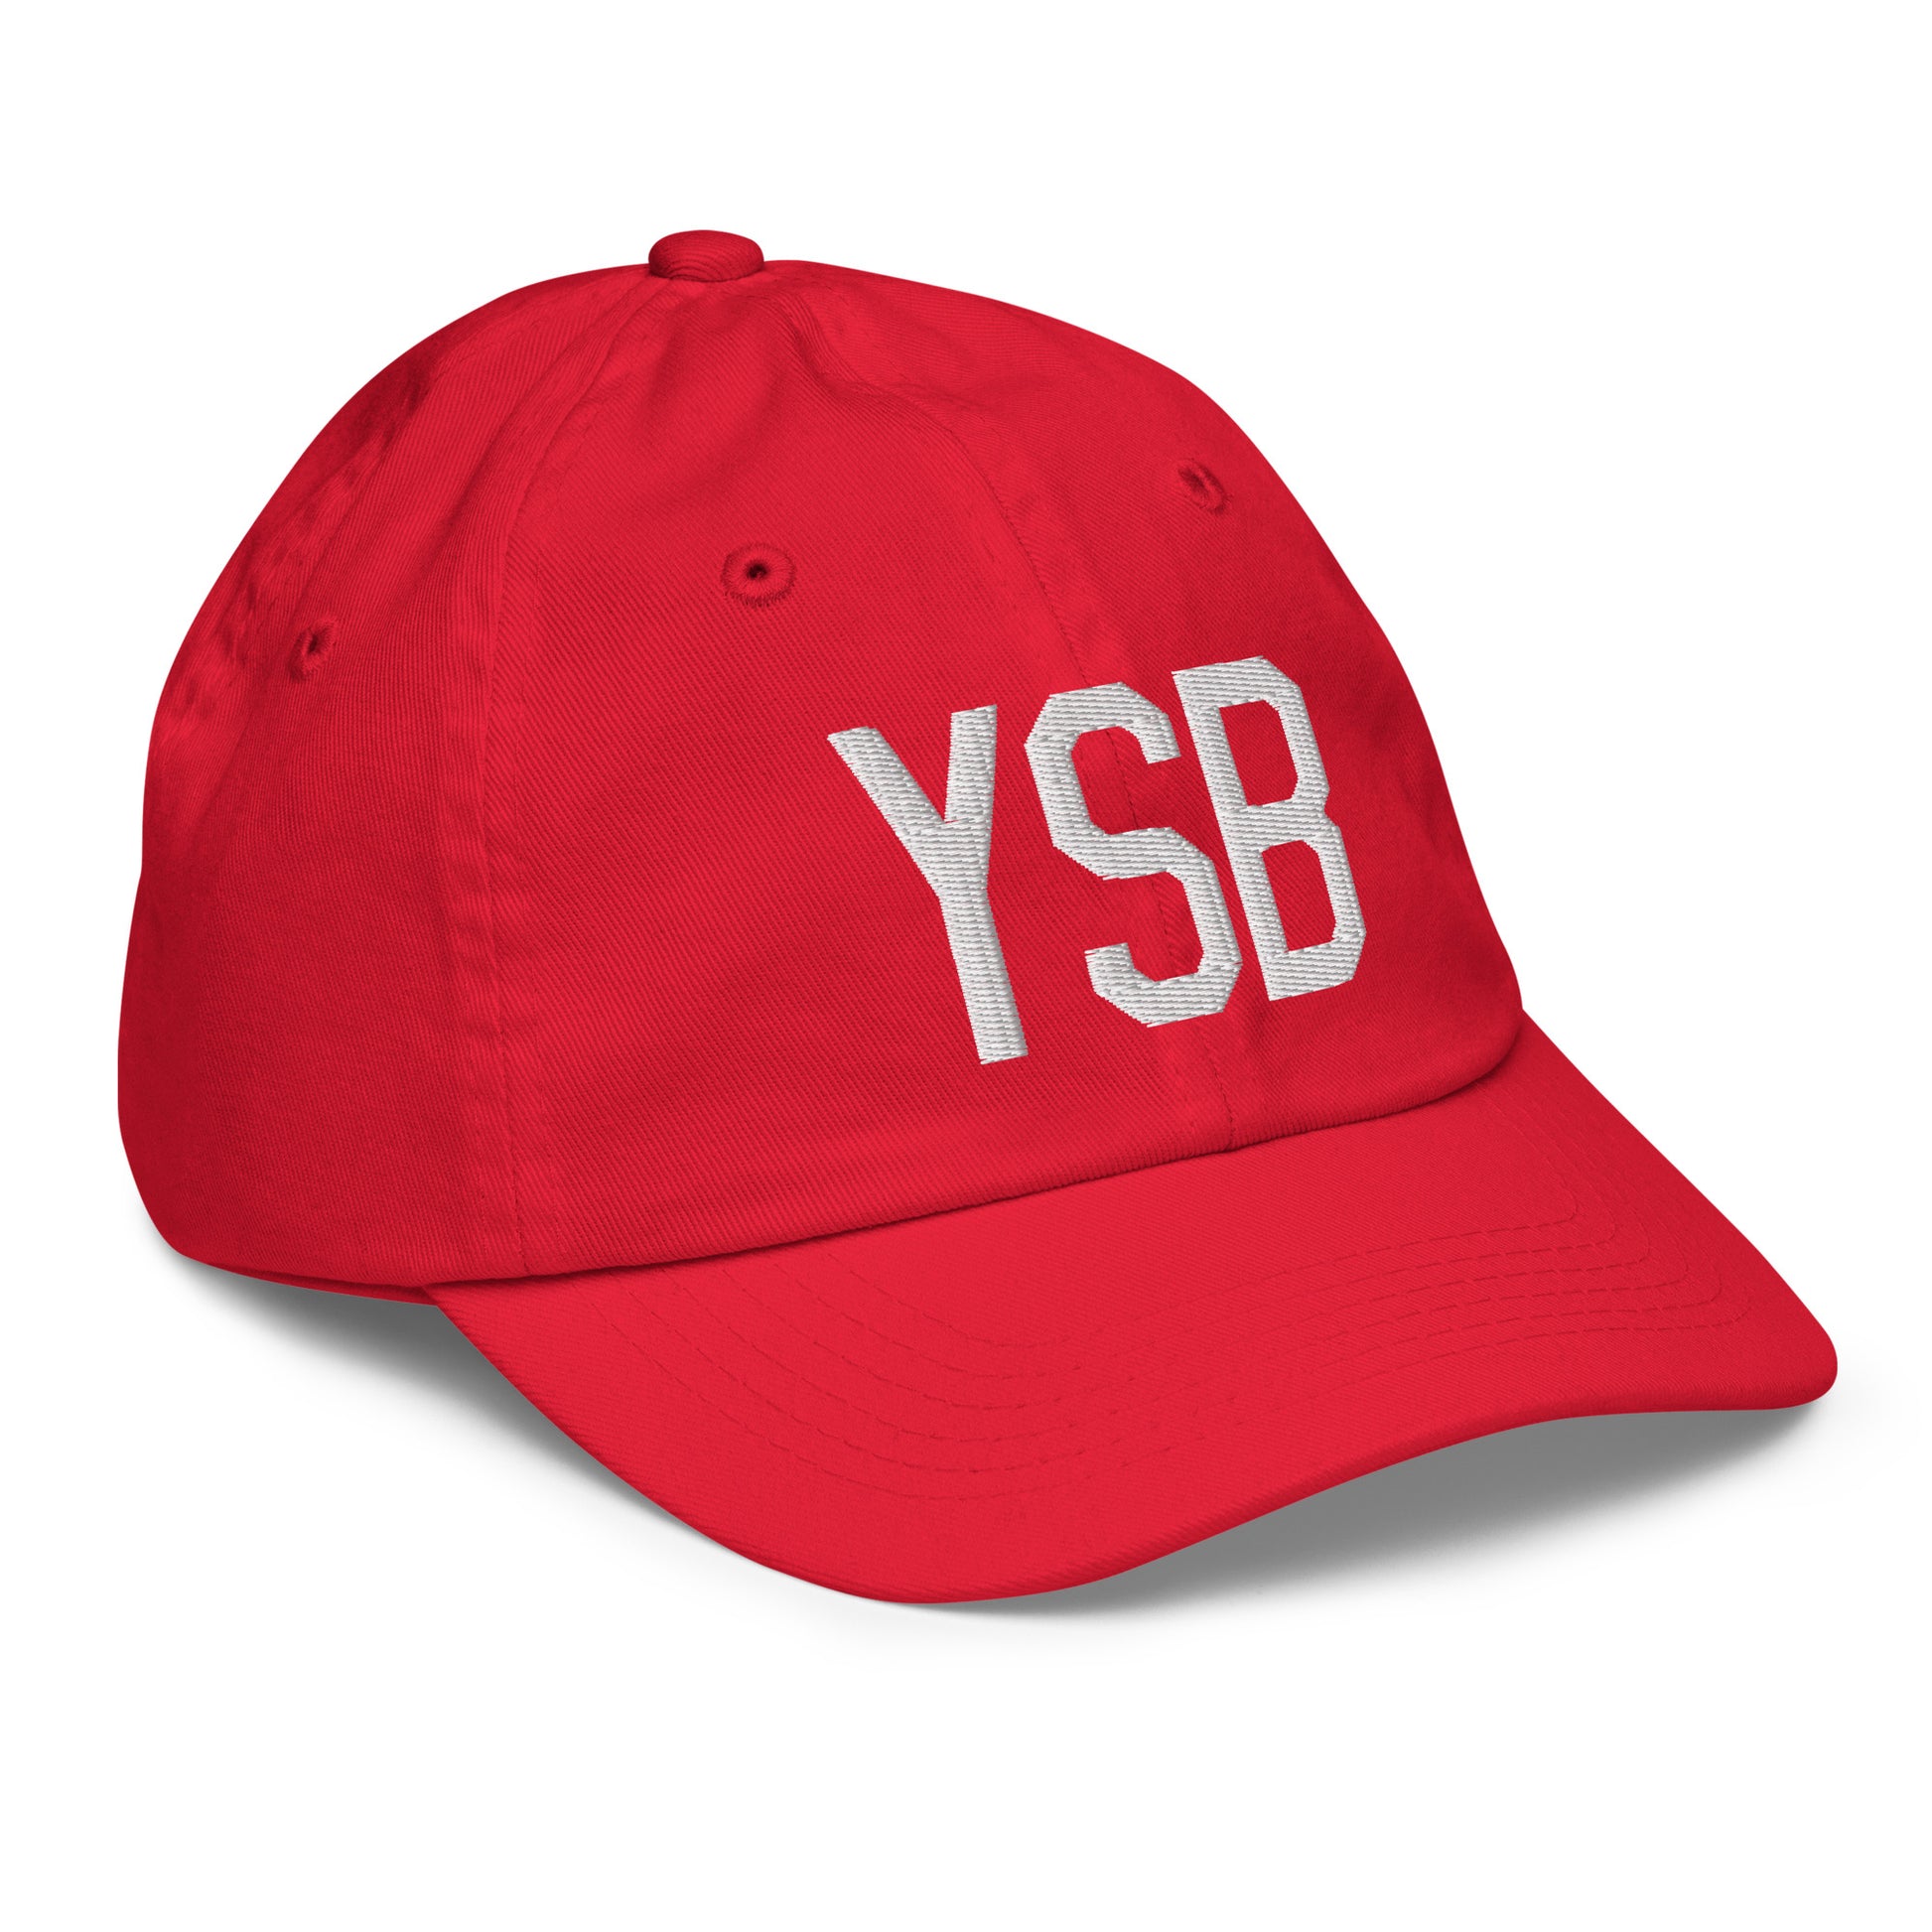 Airport Code Kid's Baseball Cap - White • YSB Sudbury • YHM Designs - Image 18